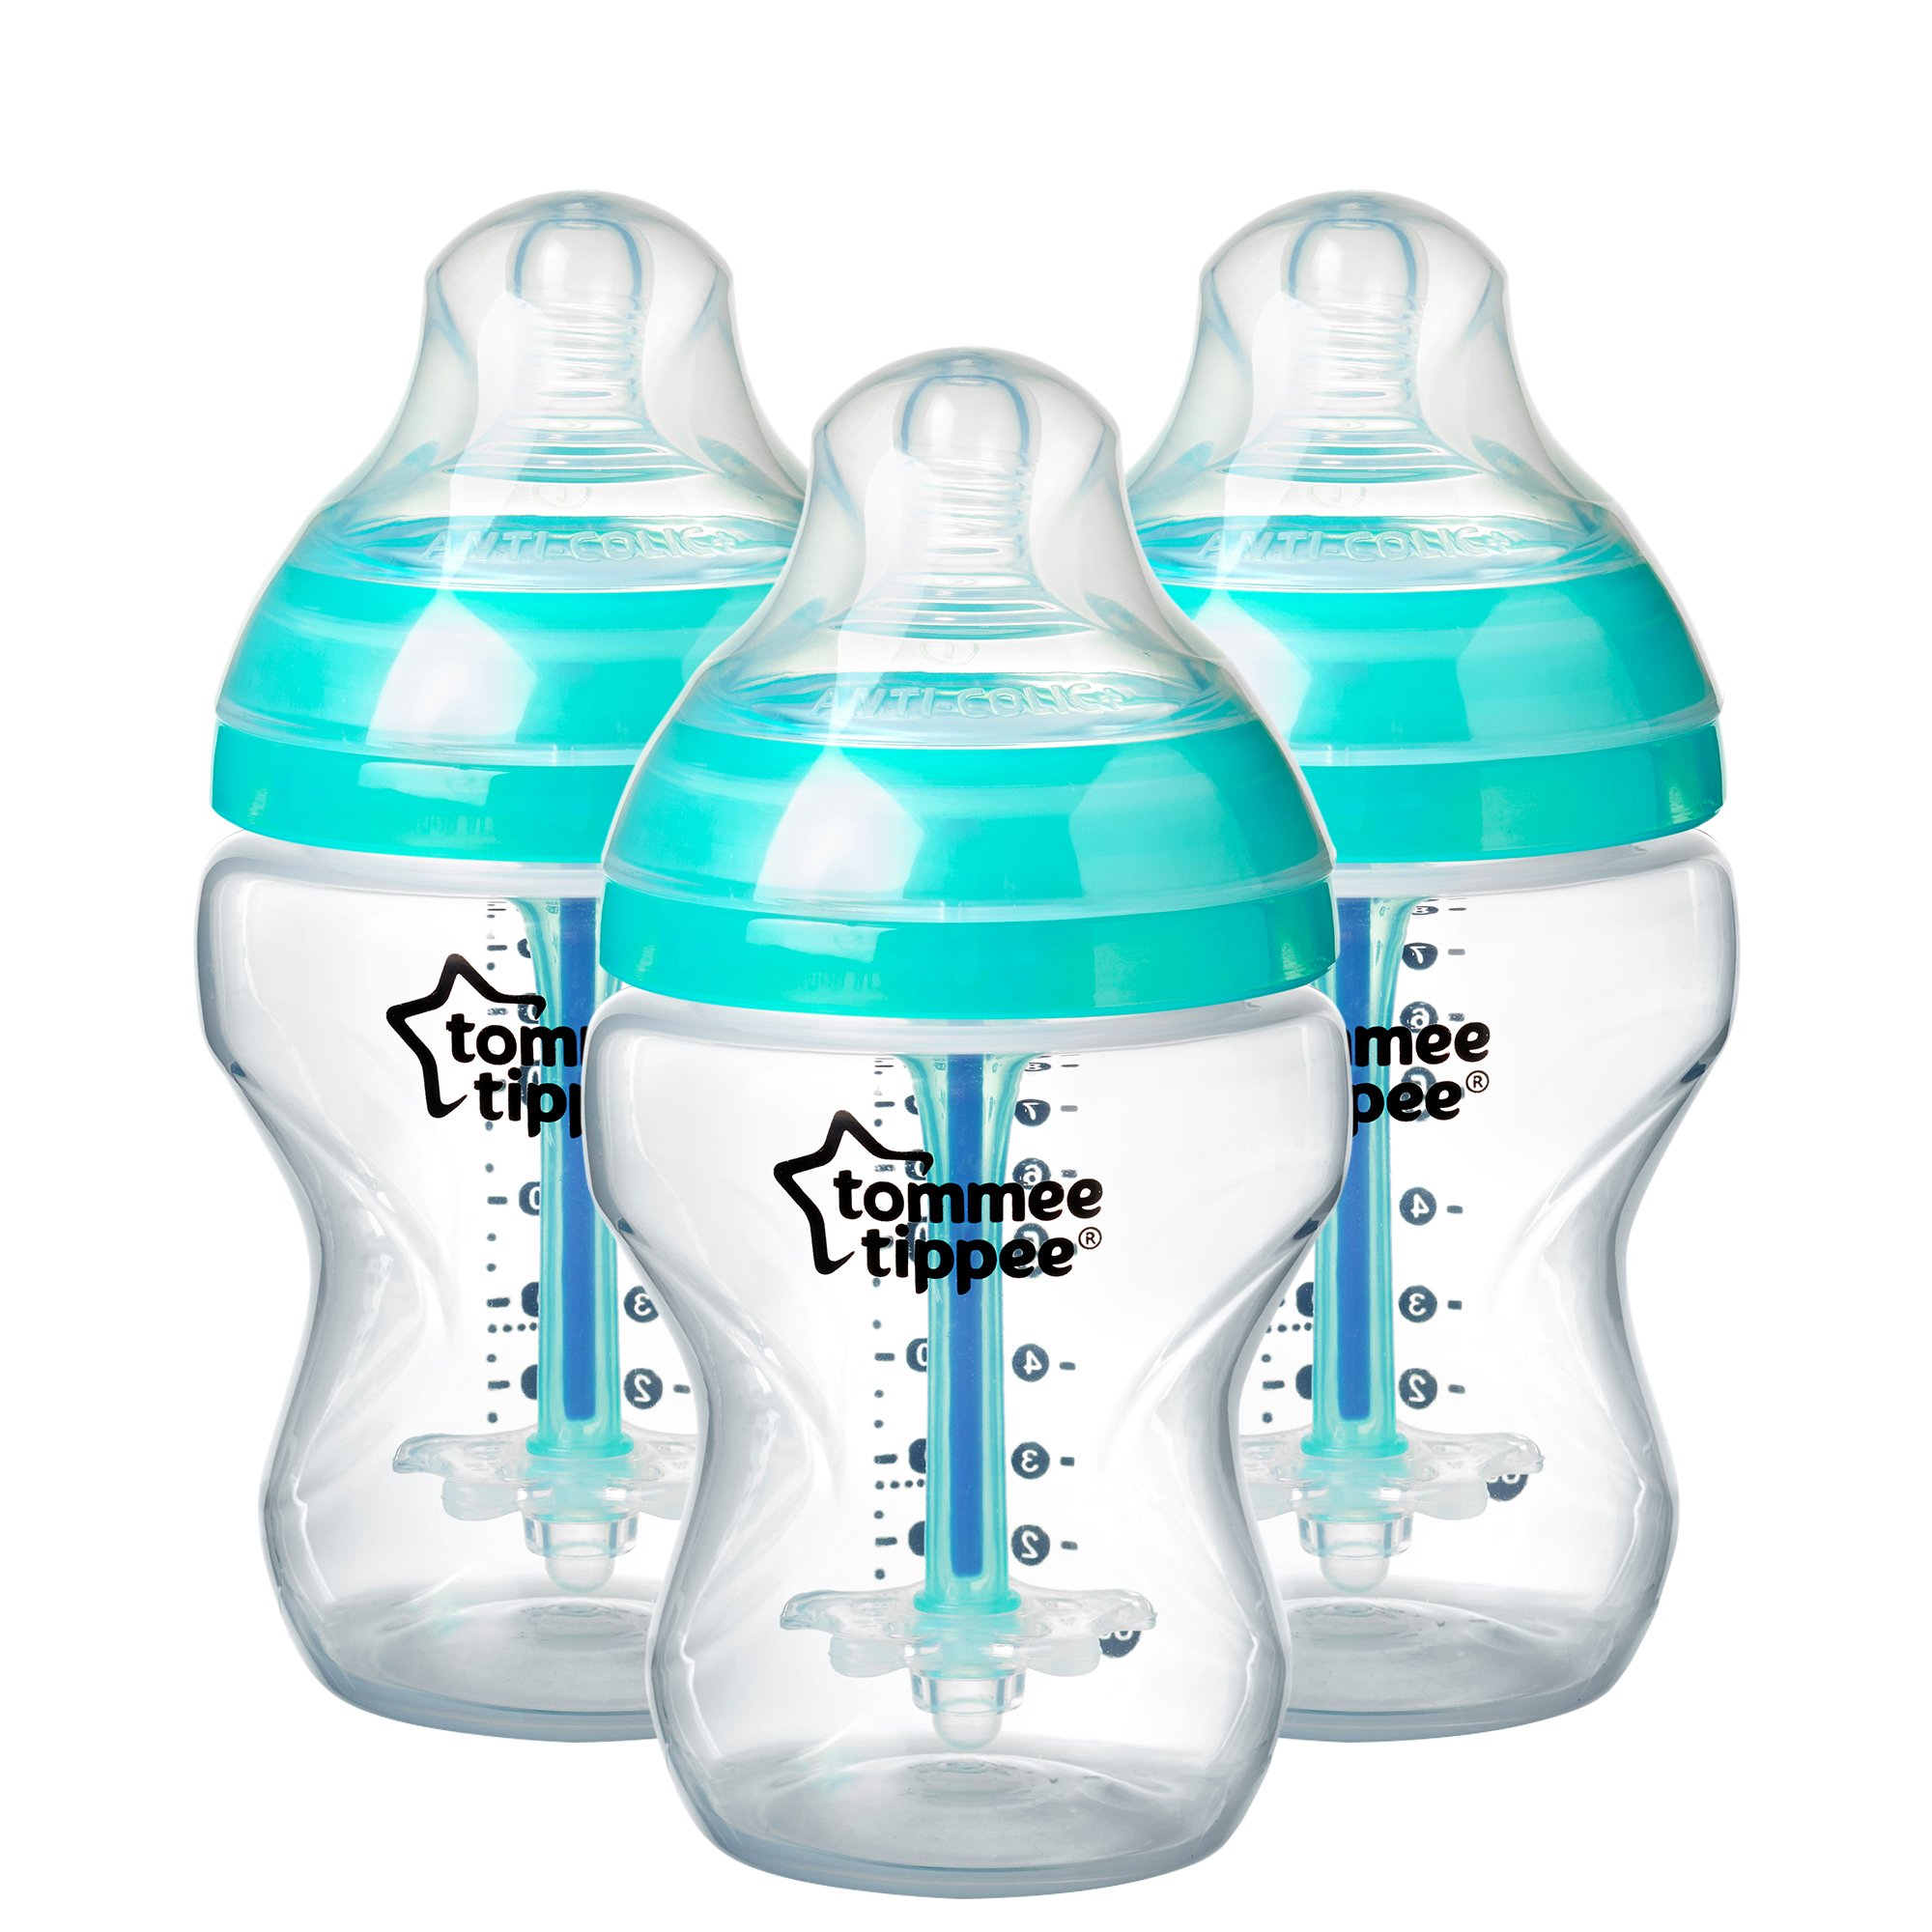 המדע של בקבוקי תינוקות נגד קוליק: הפחתת צריכת אוויר ואי נוחות אצל תינוקות